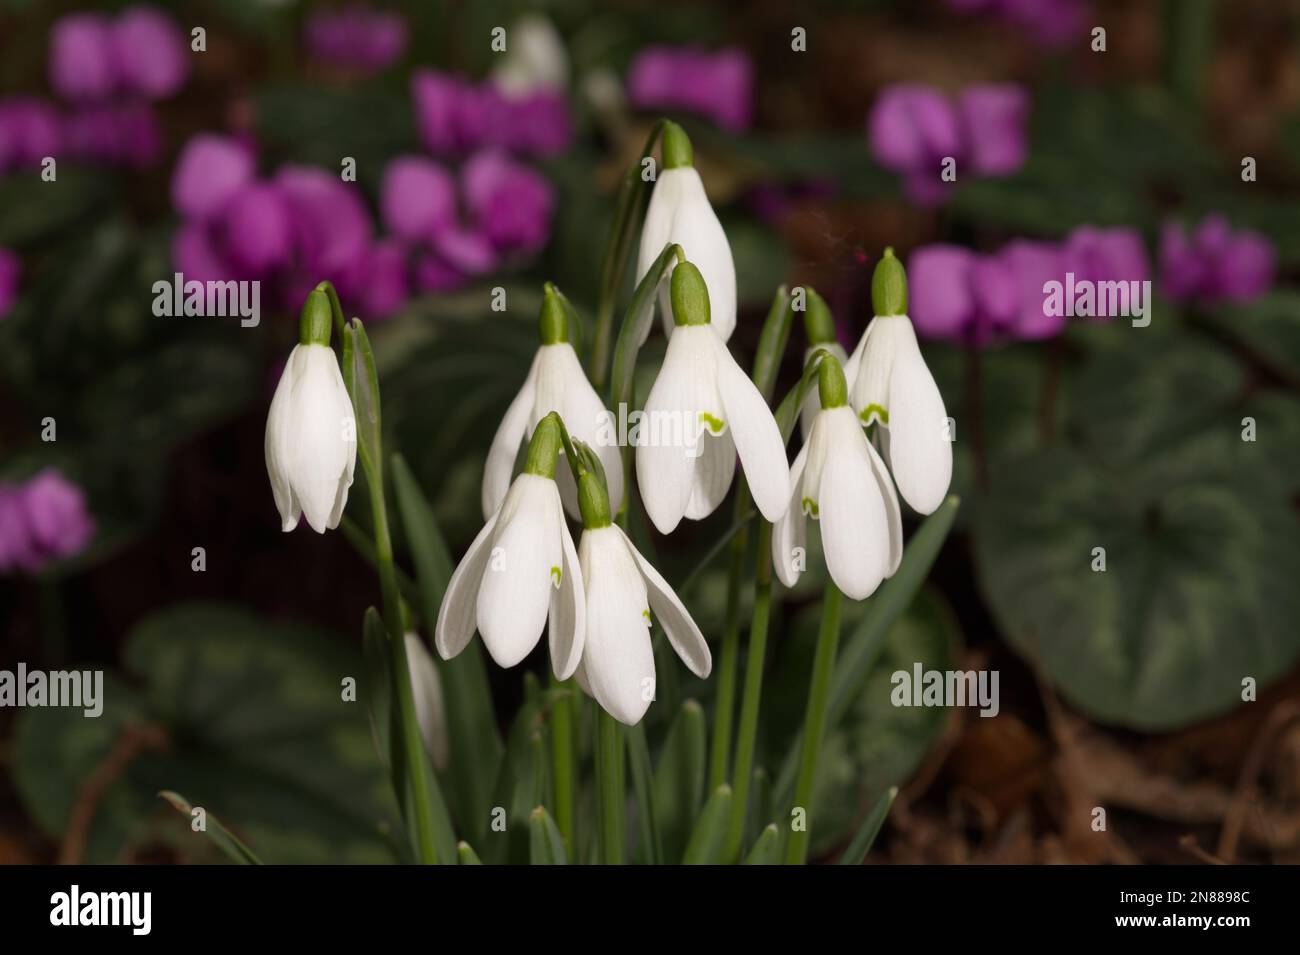 Esposizione invernale di gocce di neve, galanthus nivalis, e ciclamino magenta coum in un giardino del Regno Unito febbraio Foto Stock